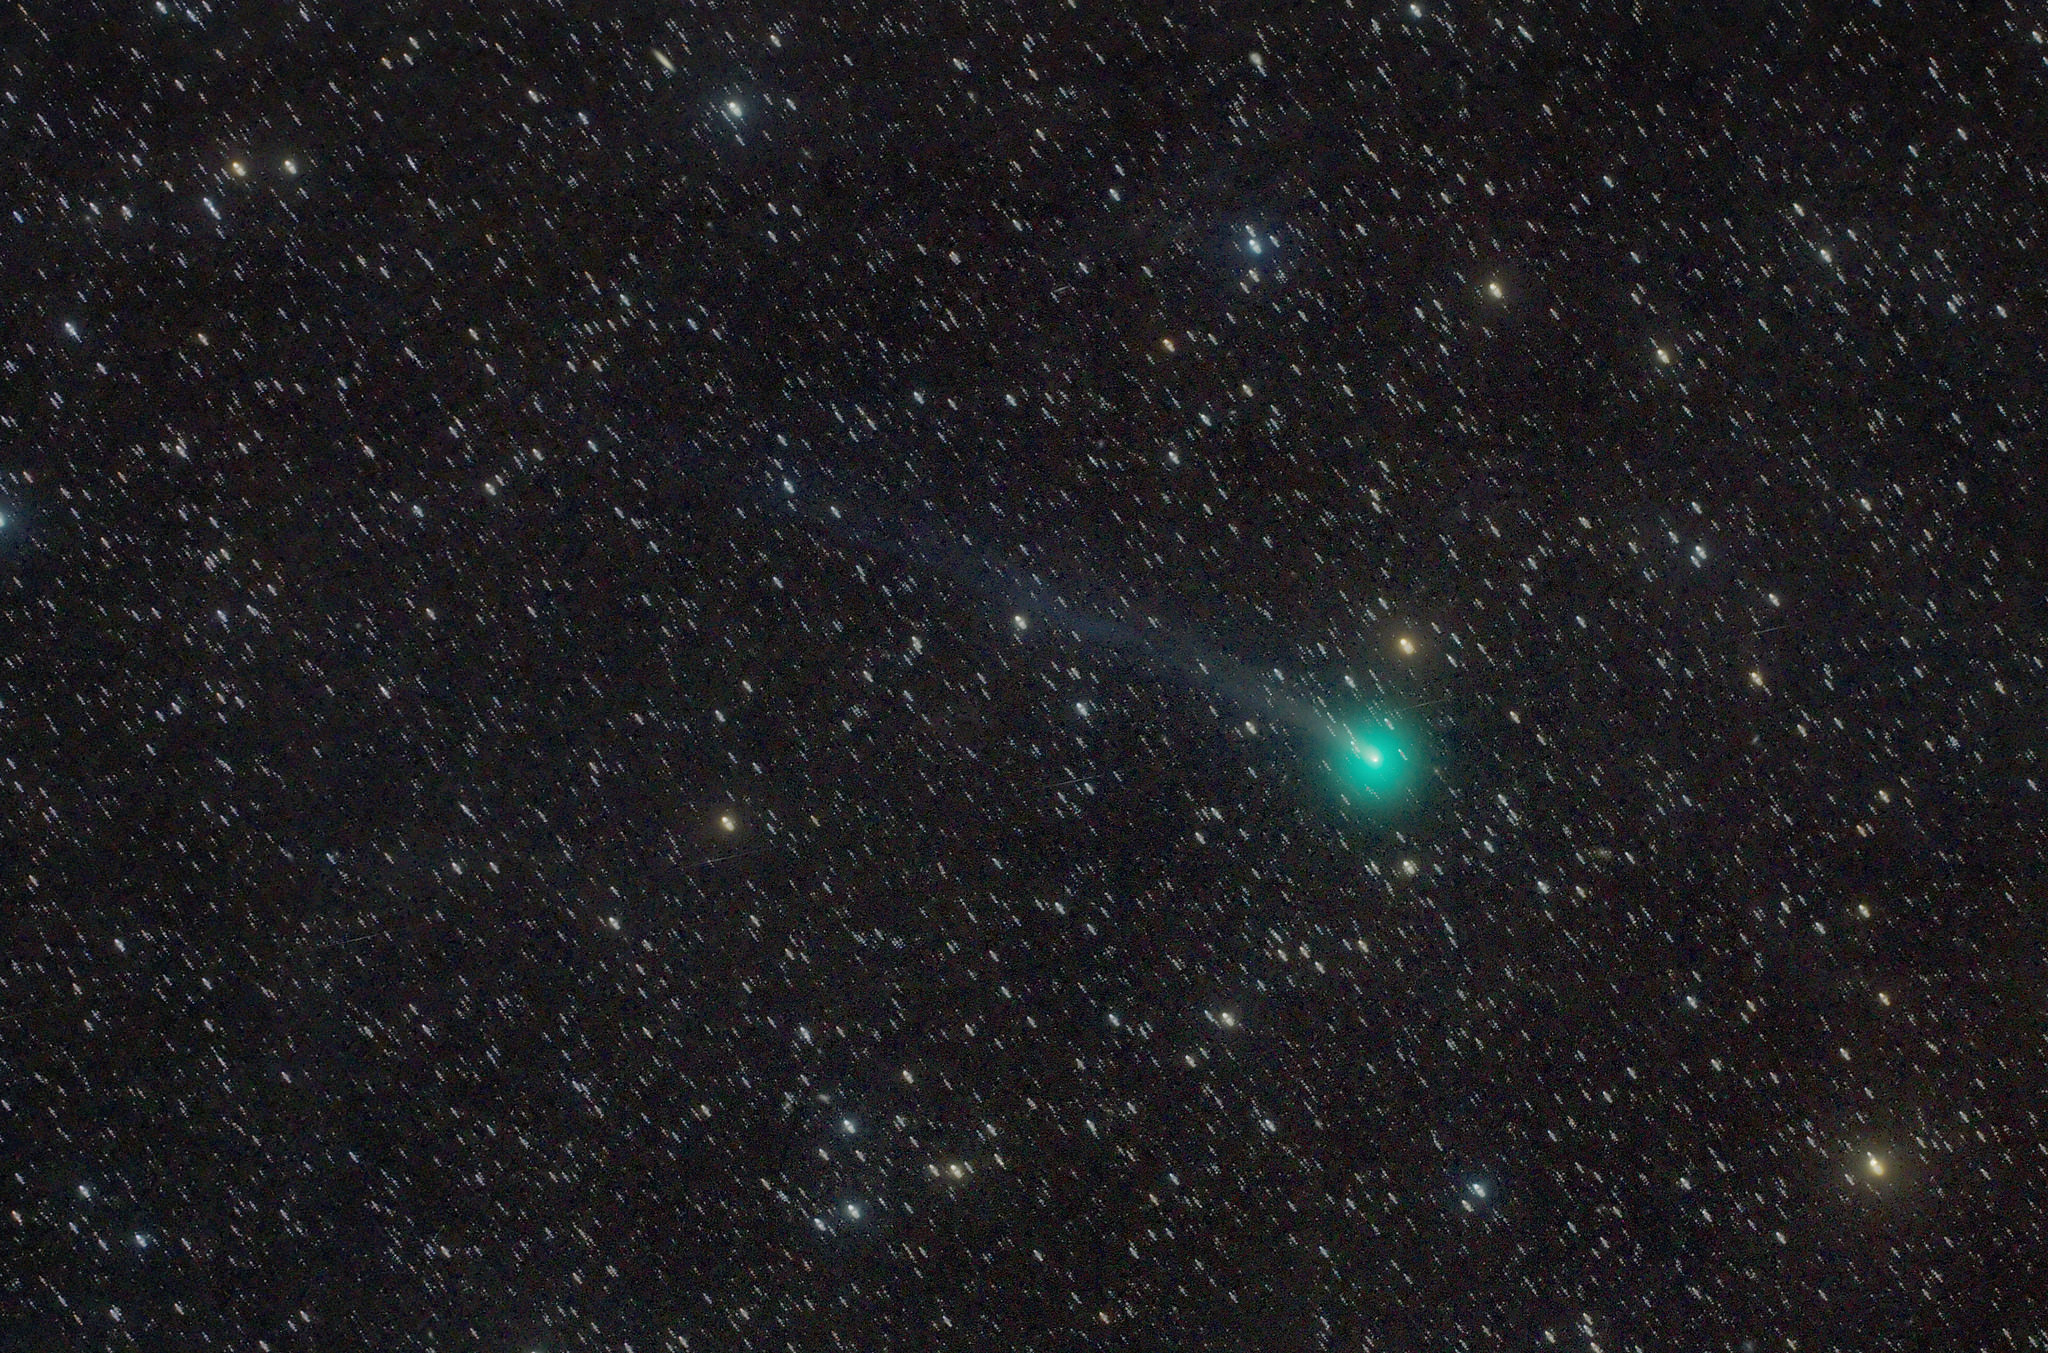 Comet X1 PanSTARRS